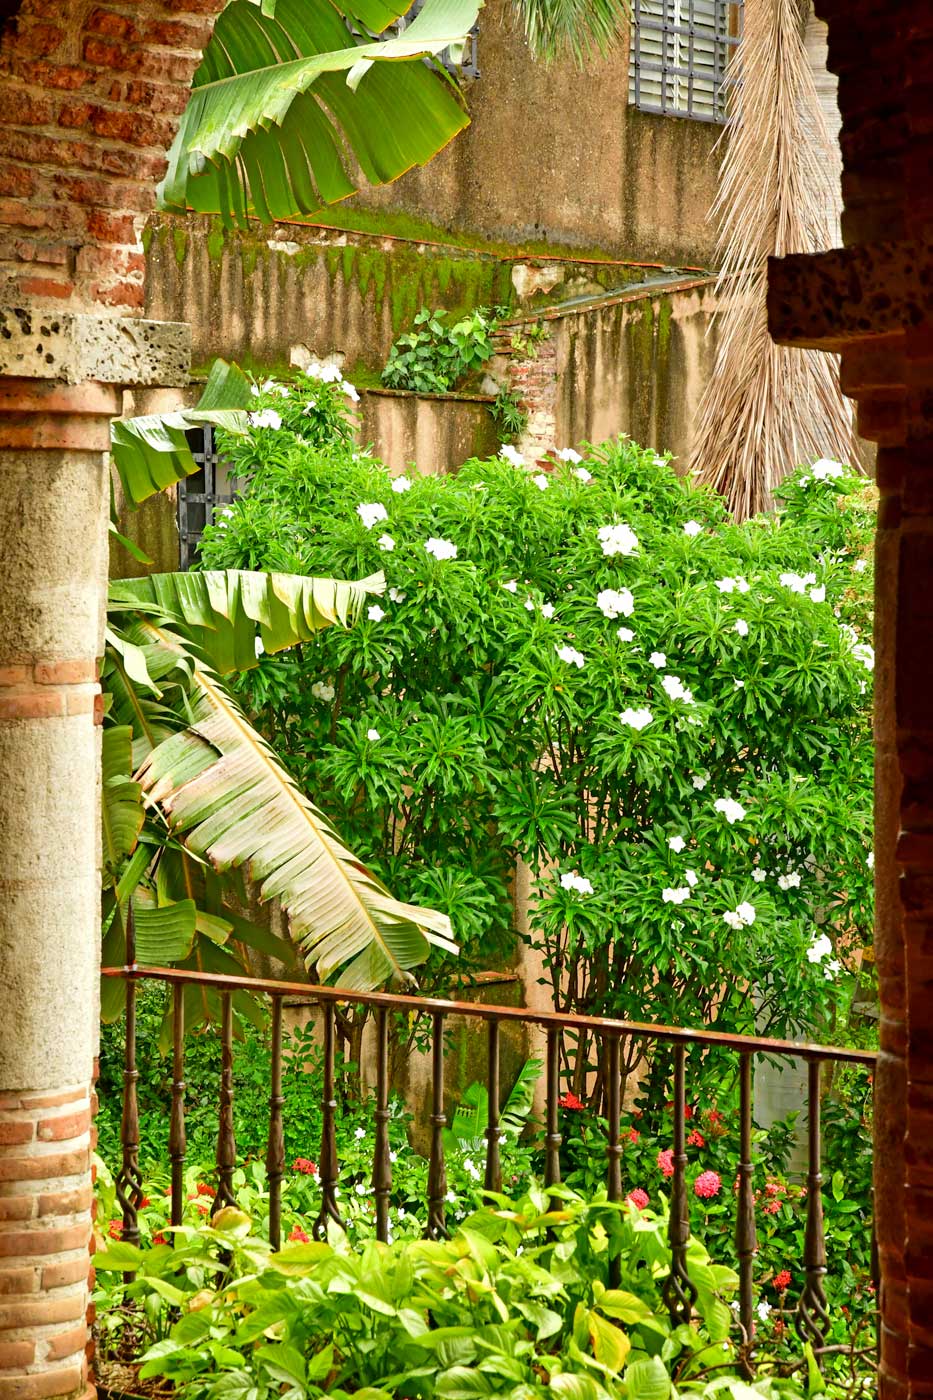 Tropical garden in Zona Colonial.